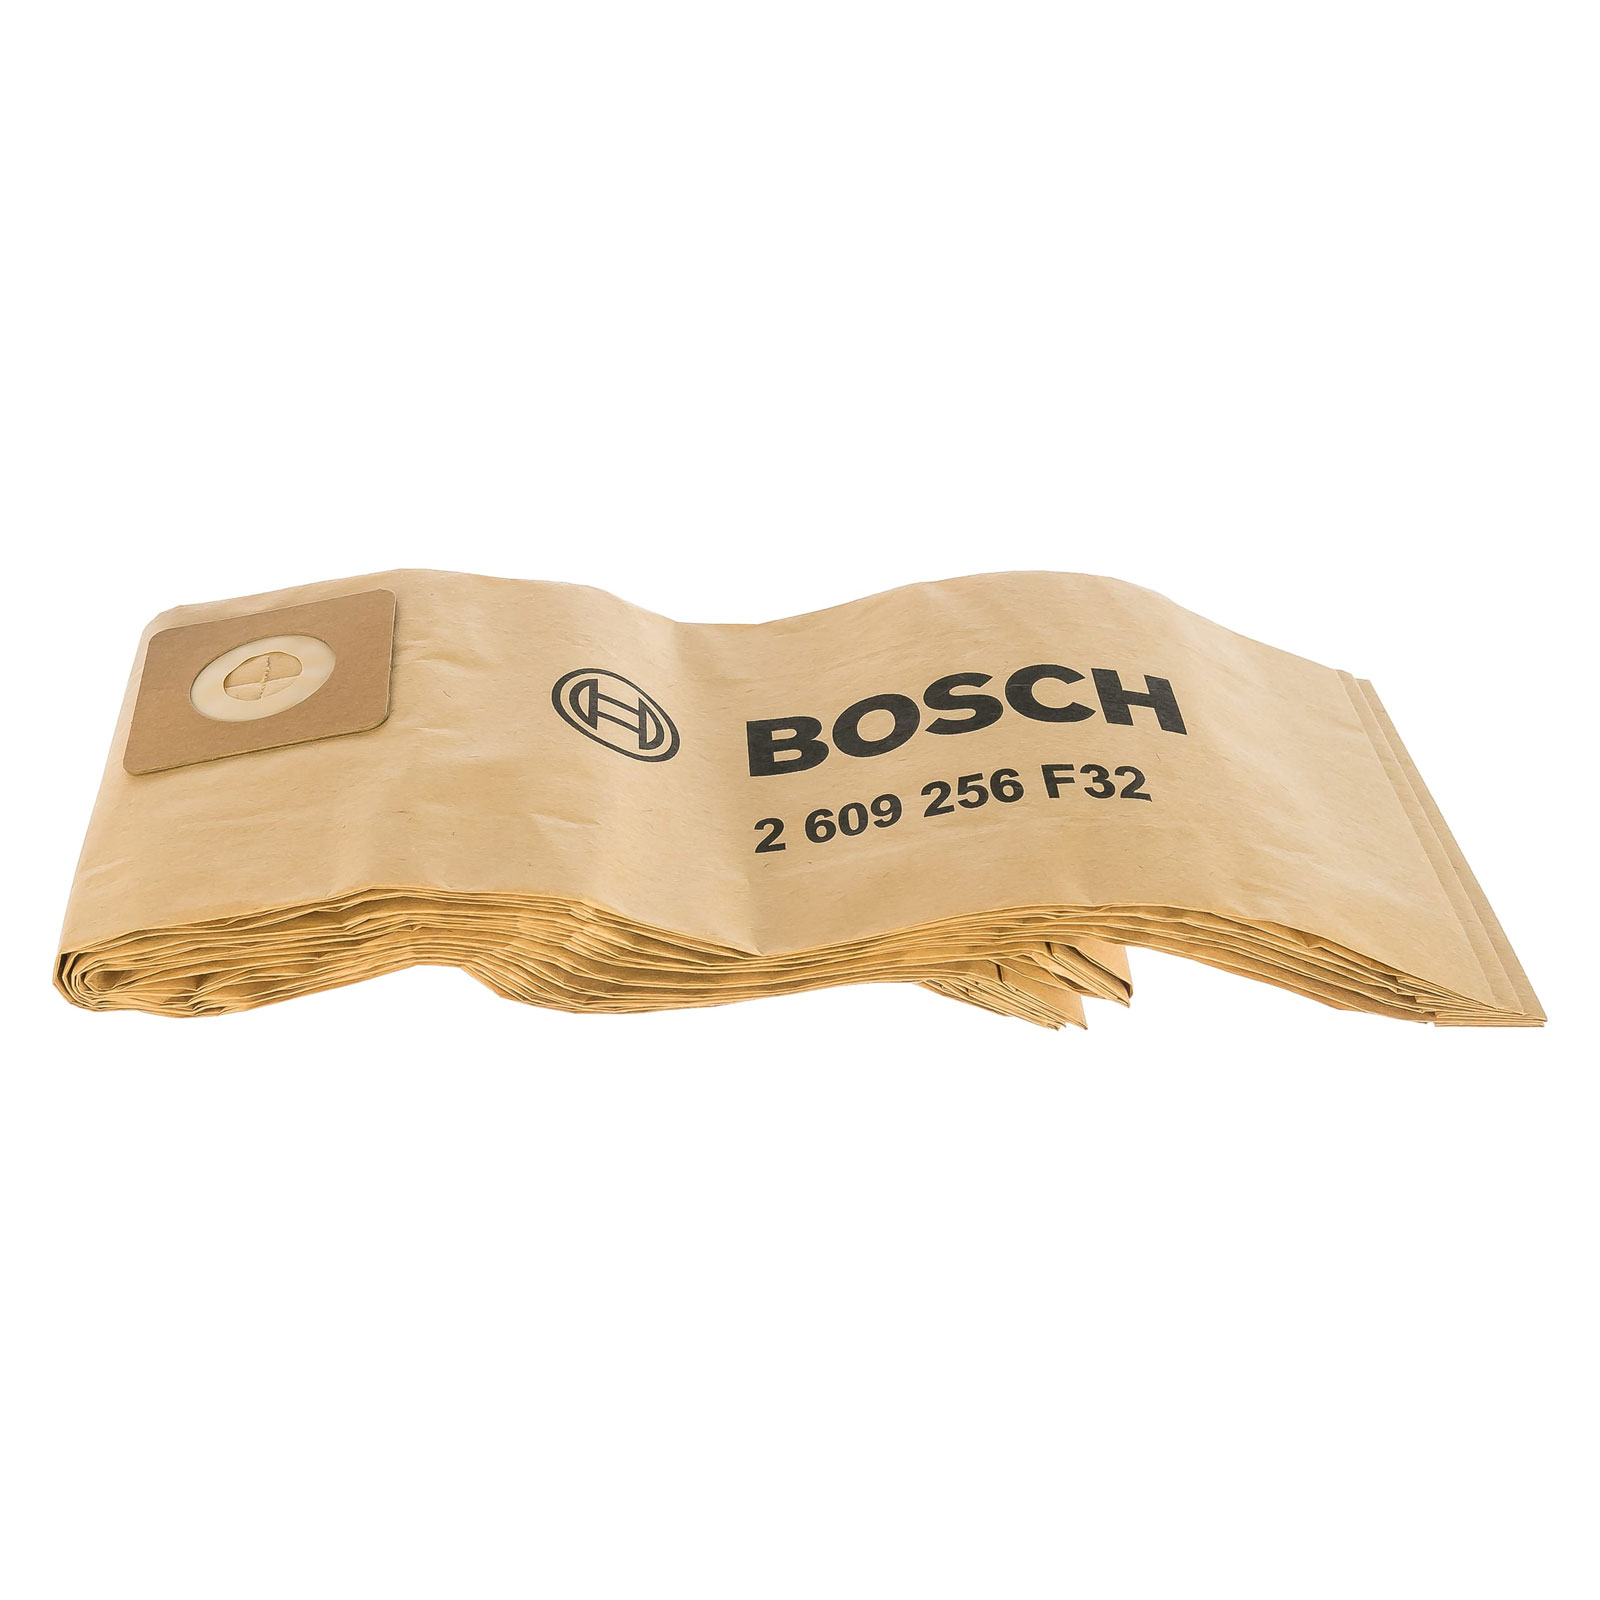 Бумажный мешок Bosch для UniversalVac 15 5шт. 2609256F32